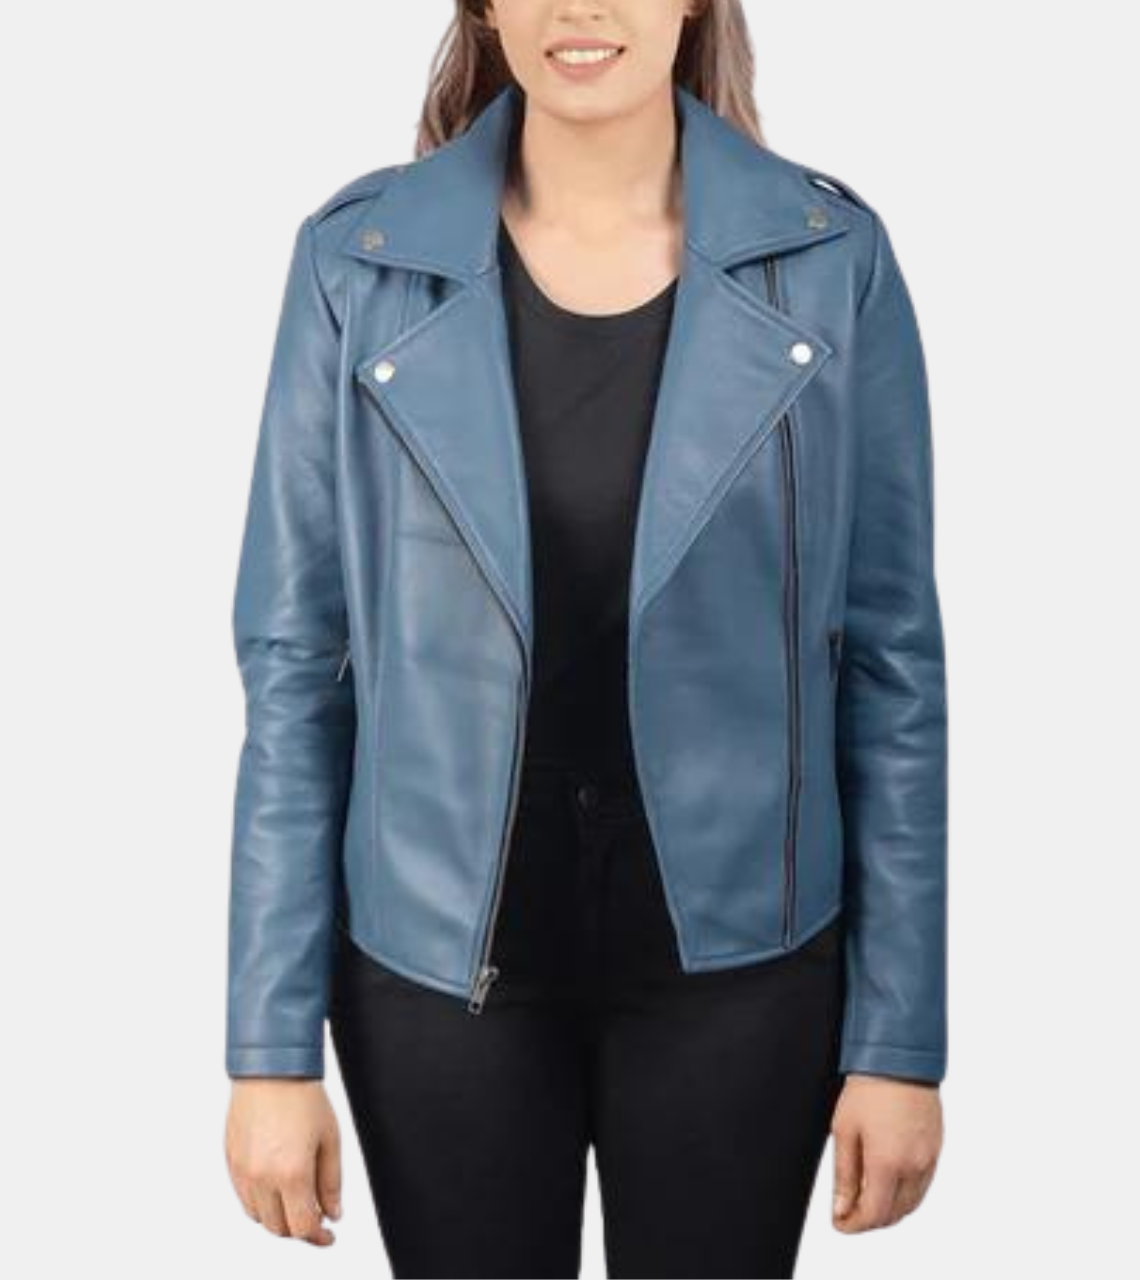 Shaelyn Women's Blue Biker's Leather Jacket